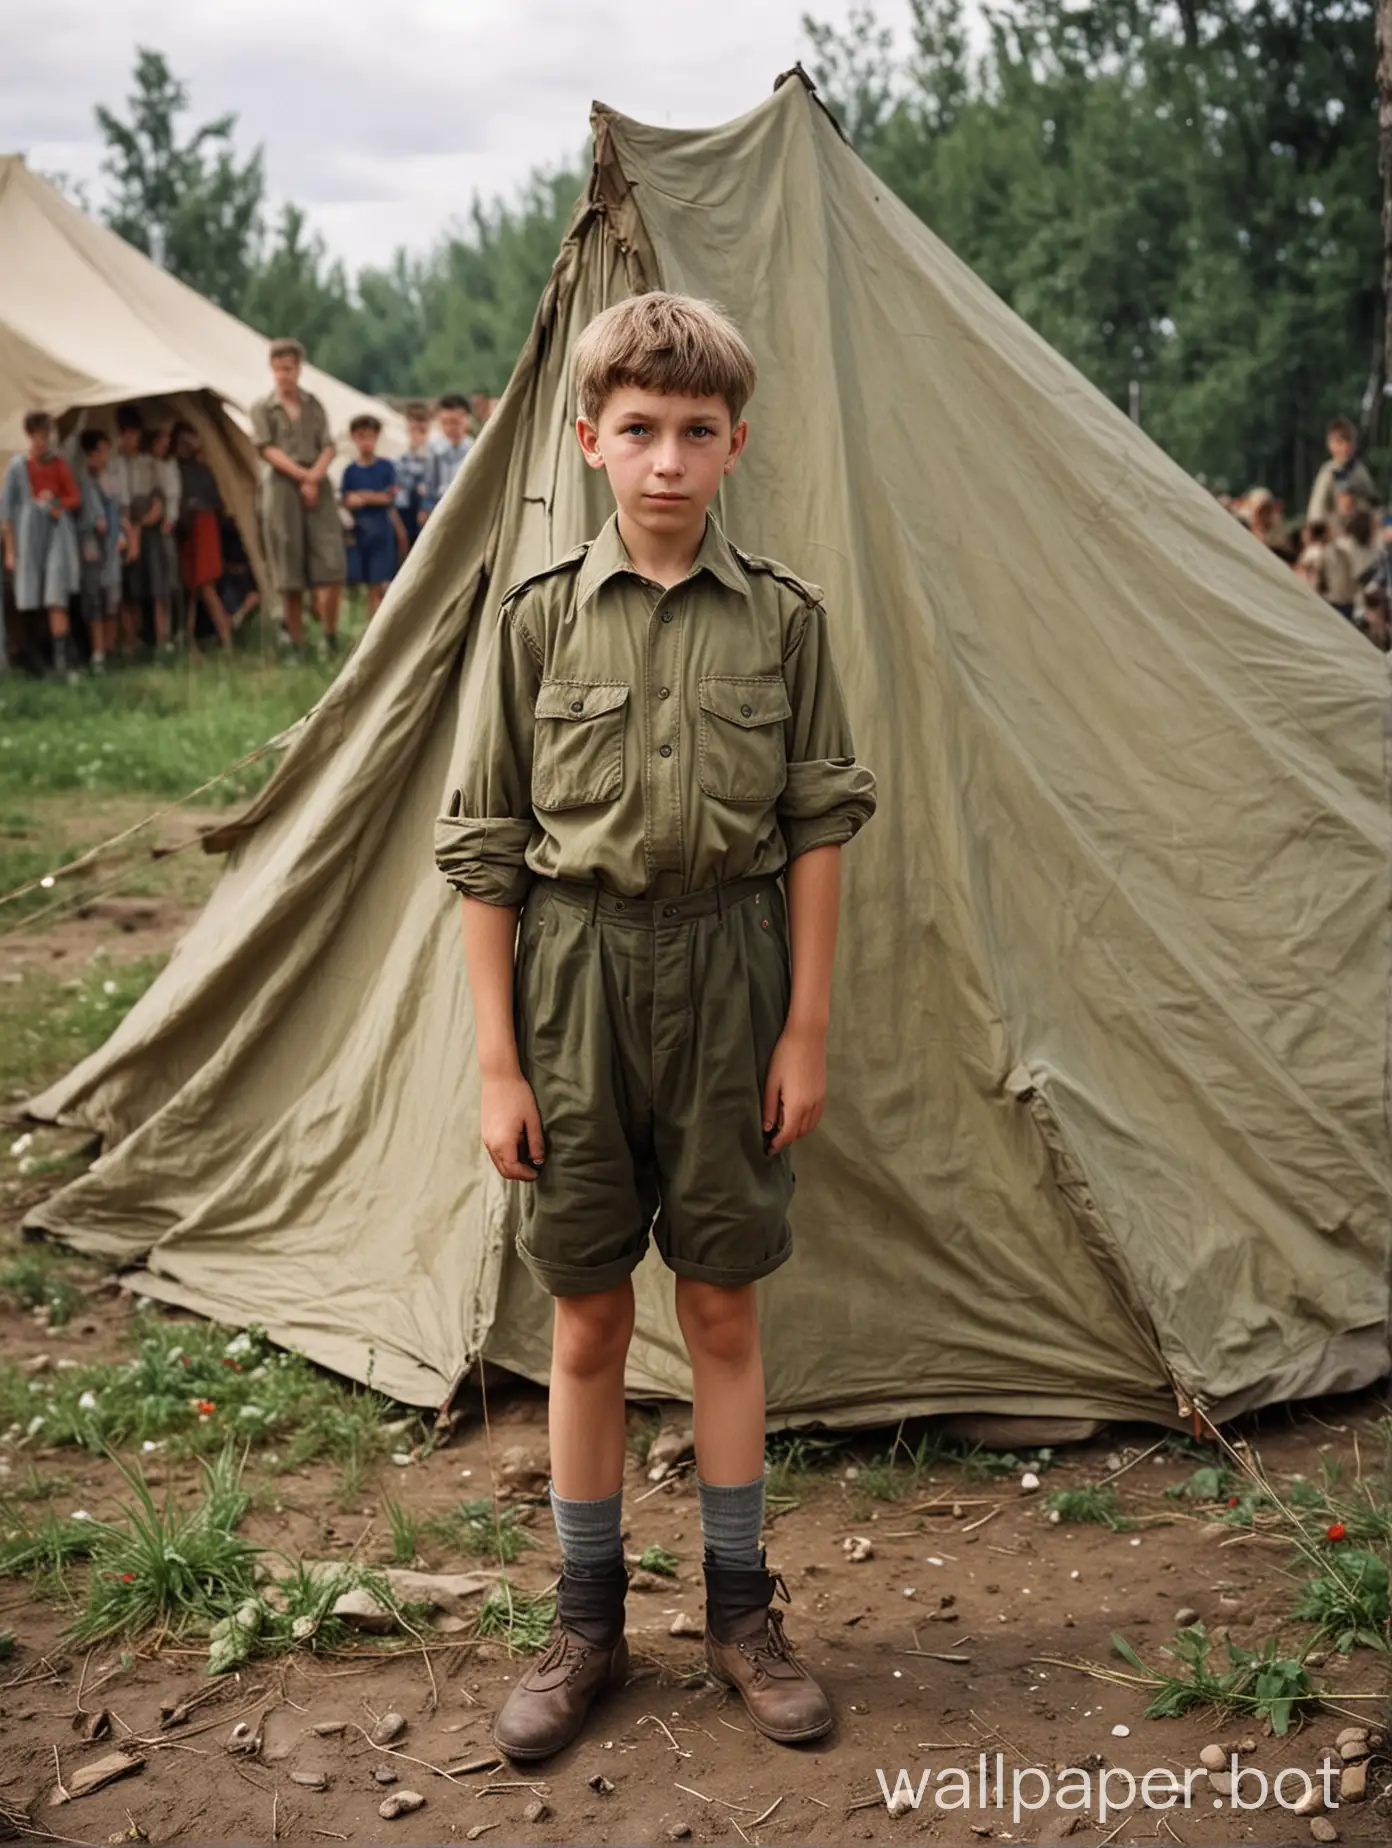 Soviet-Pioneer-Boy-Enjoying-Outdoor-Adventure-in-Tent-with-Friends